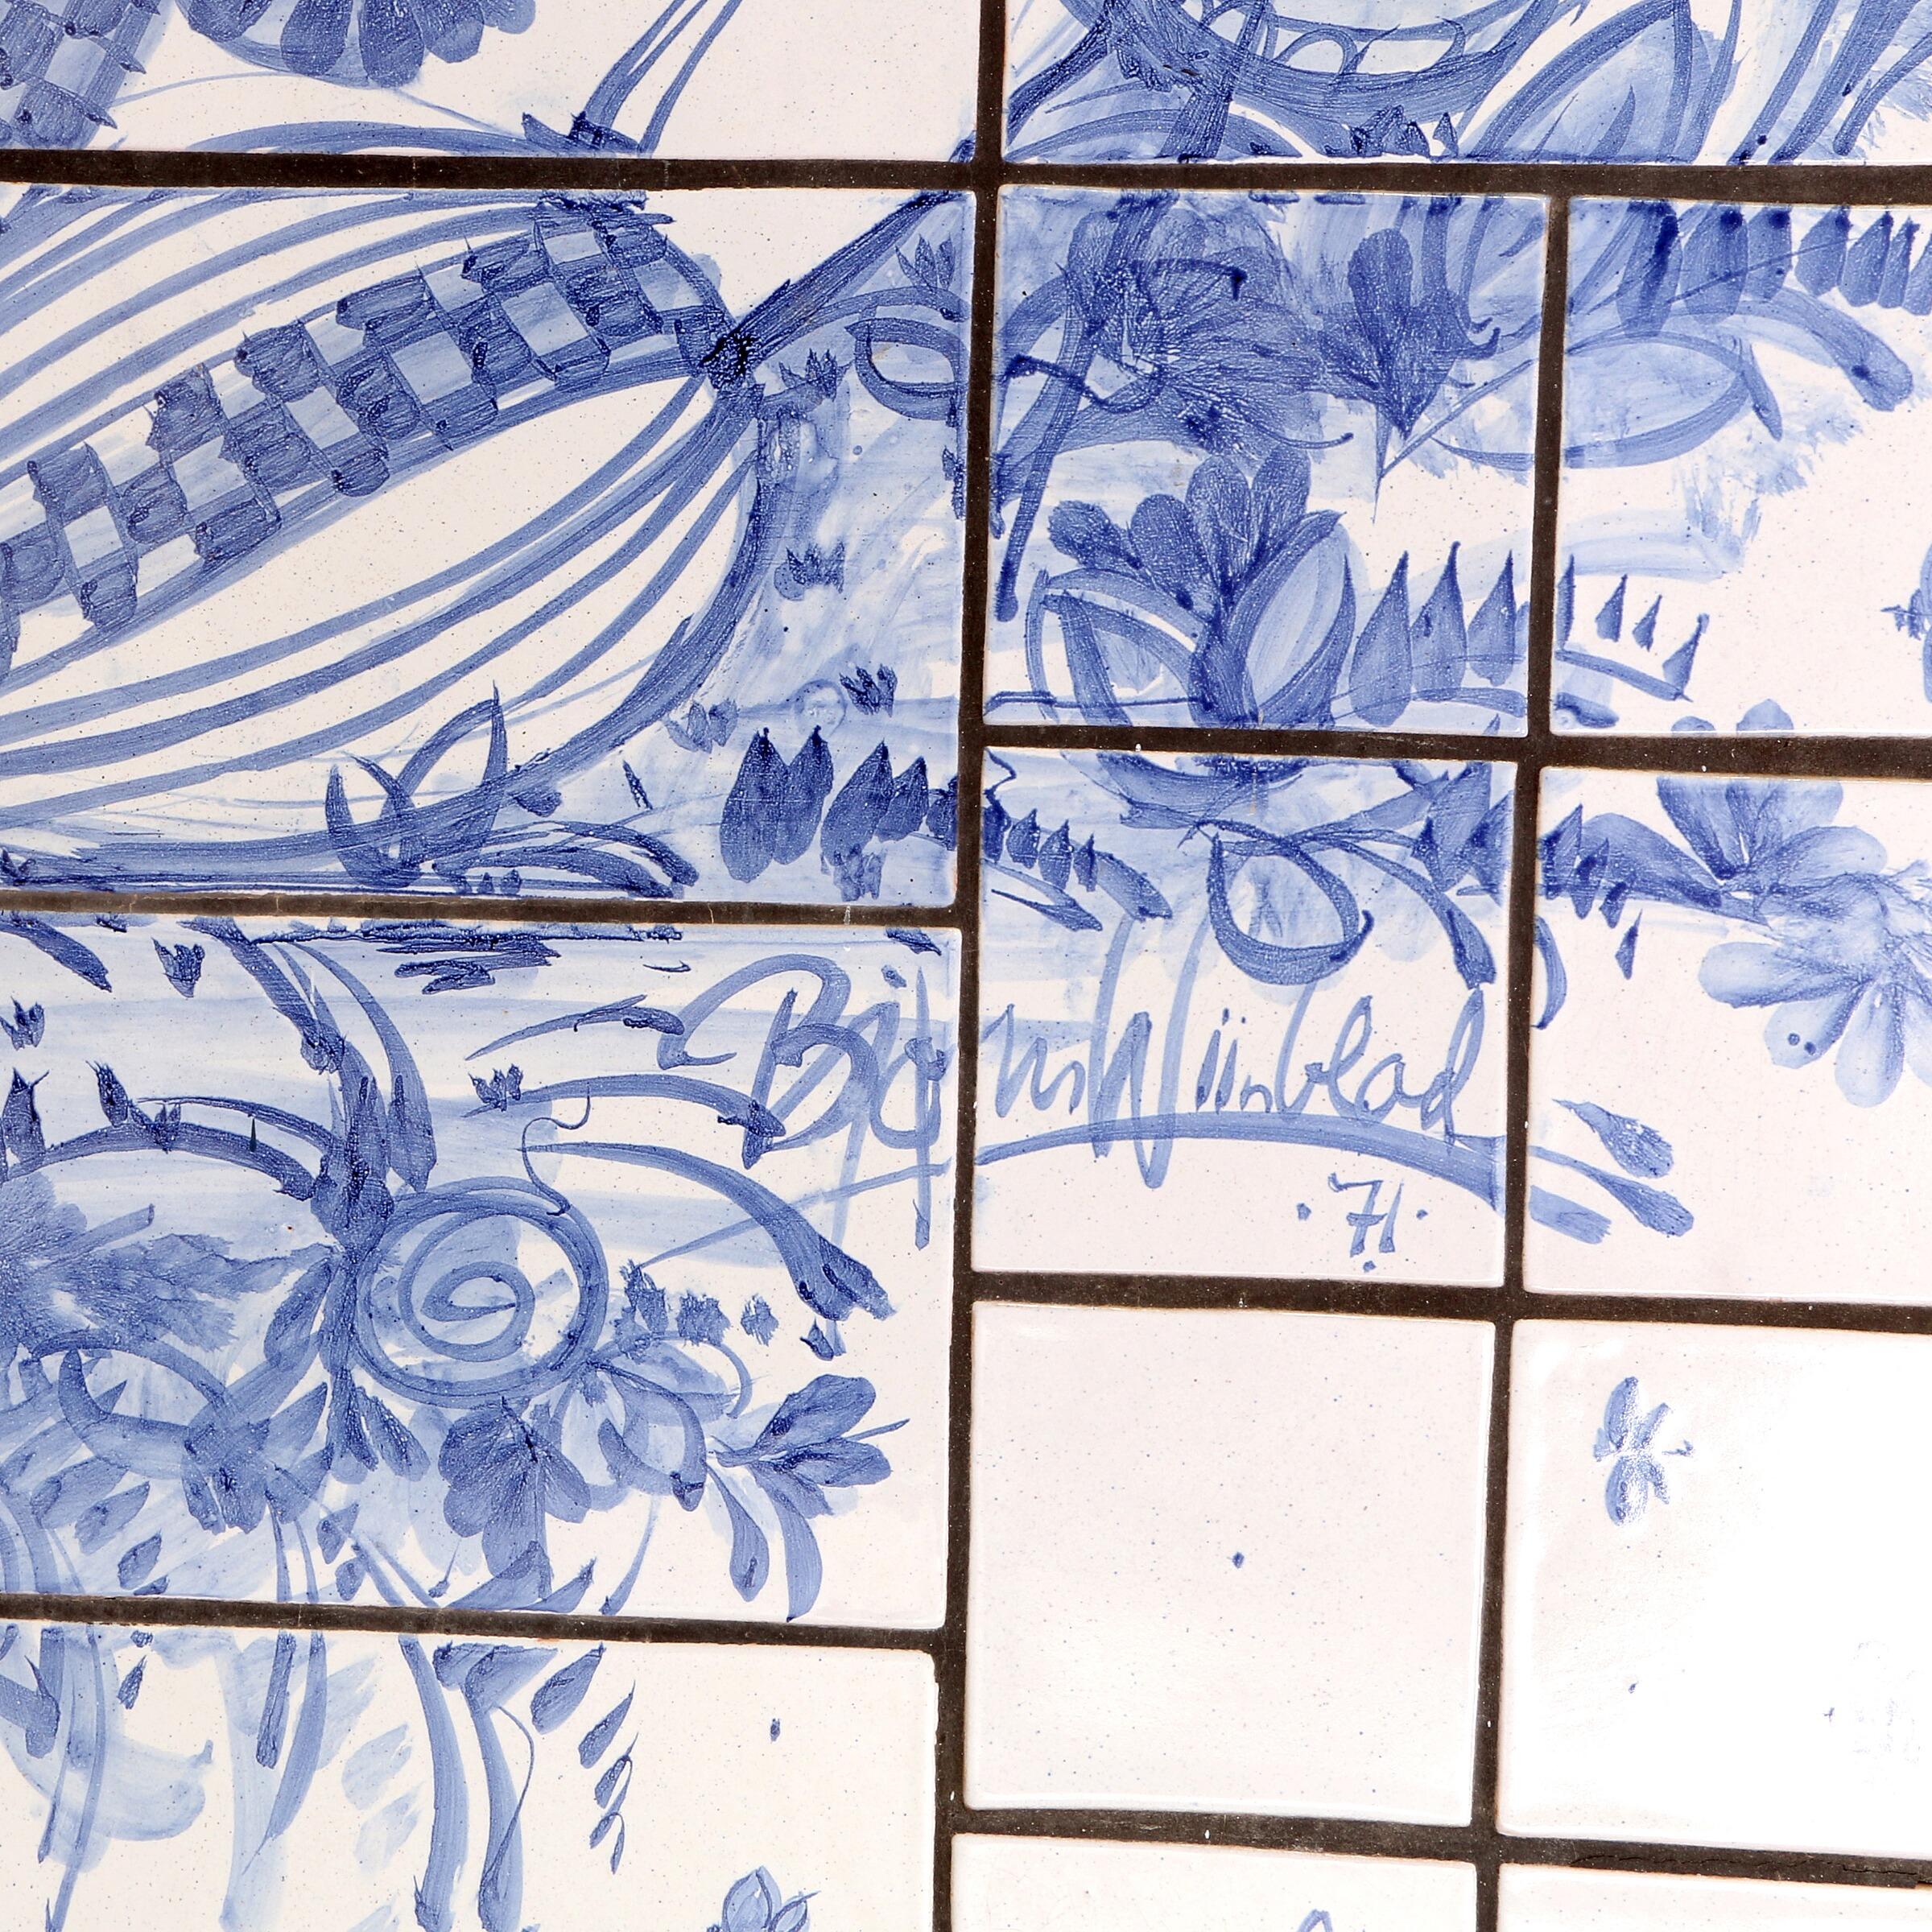 Bjørn Wiinblad, very large rectangular relief with blue glazed tiles depicting a tree and two figures. Signed Bjørn Wiinblad 71. Measures: H. 302 cm., B. 105 cm. Earthenware tiles decorated with blue glazed motifs on a light grey base. Unique.